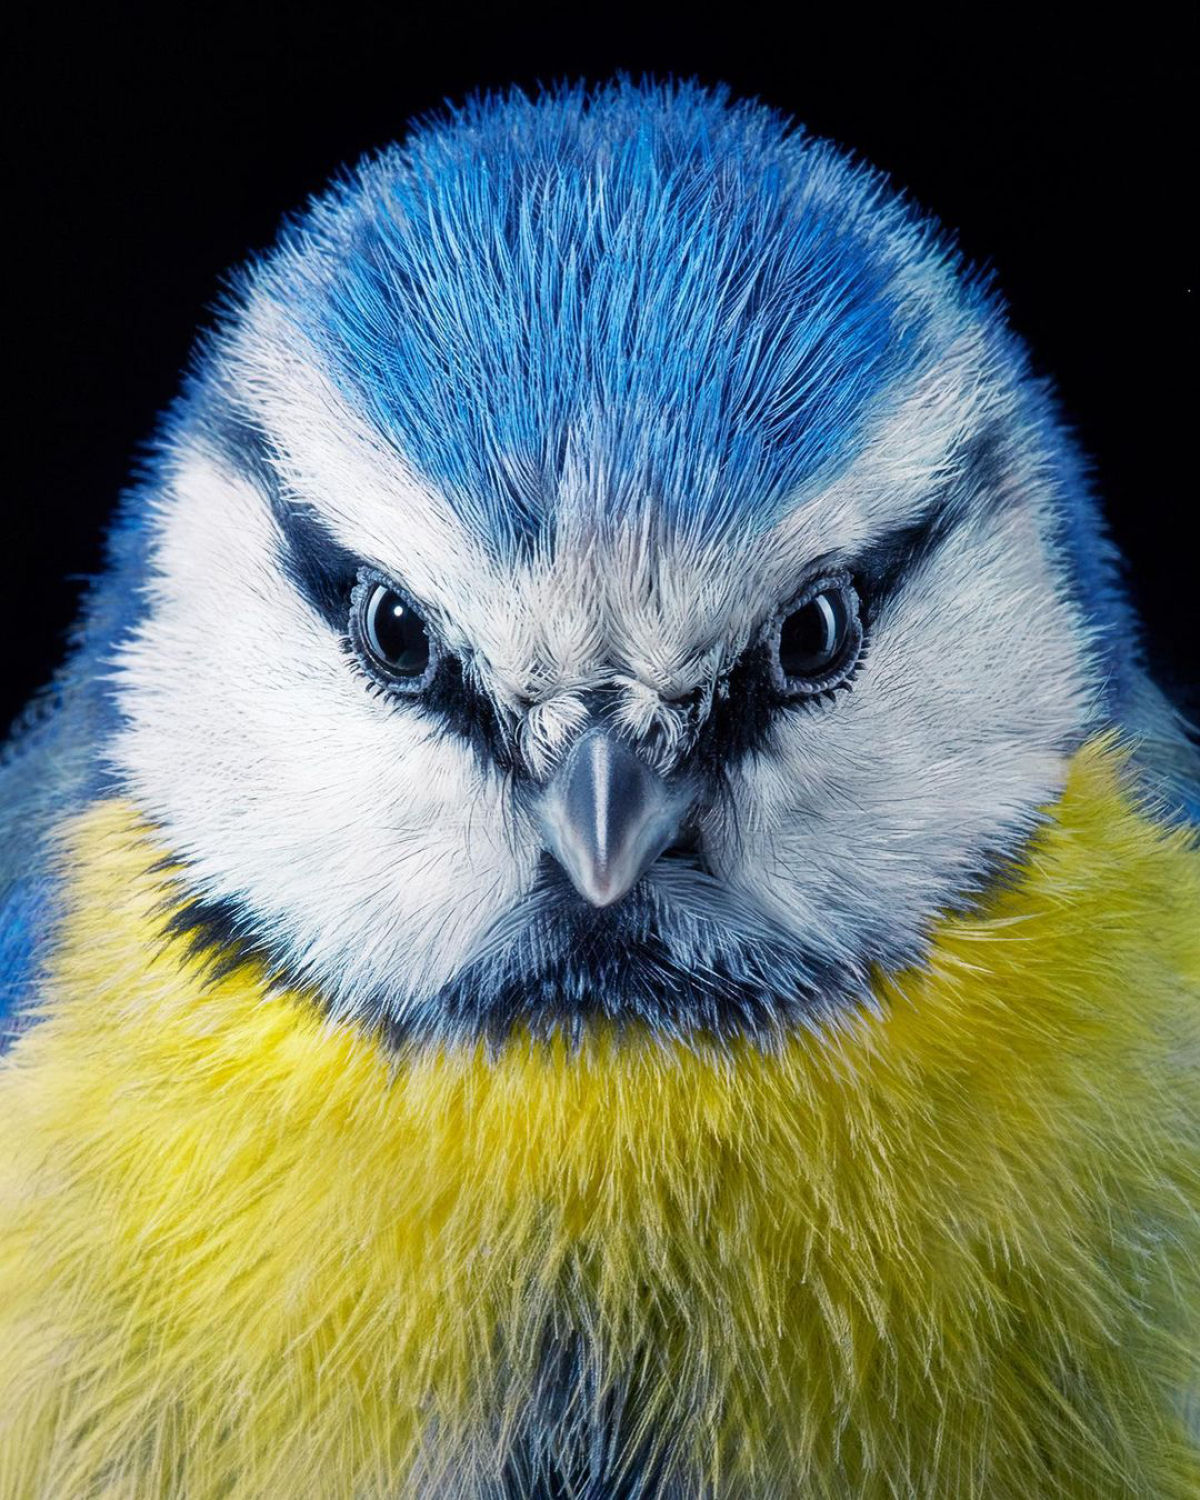 Fotógrafo londrino continua emoldurando pássaros ameaçados de extinção em retratos impressionantes 08